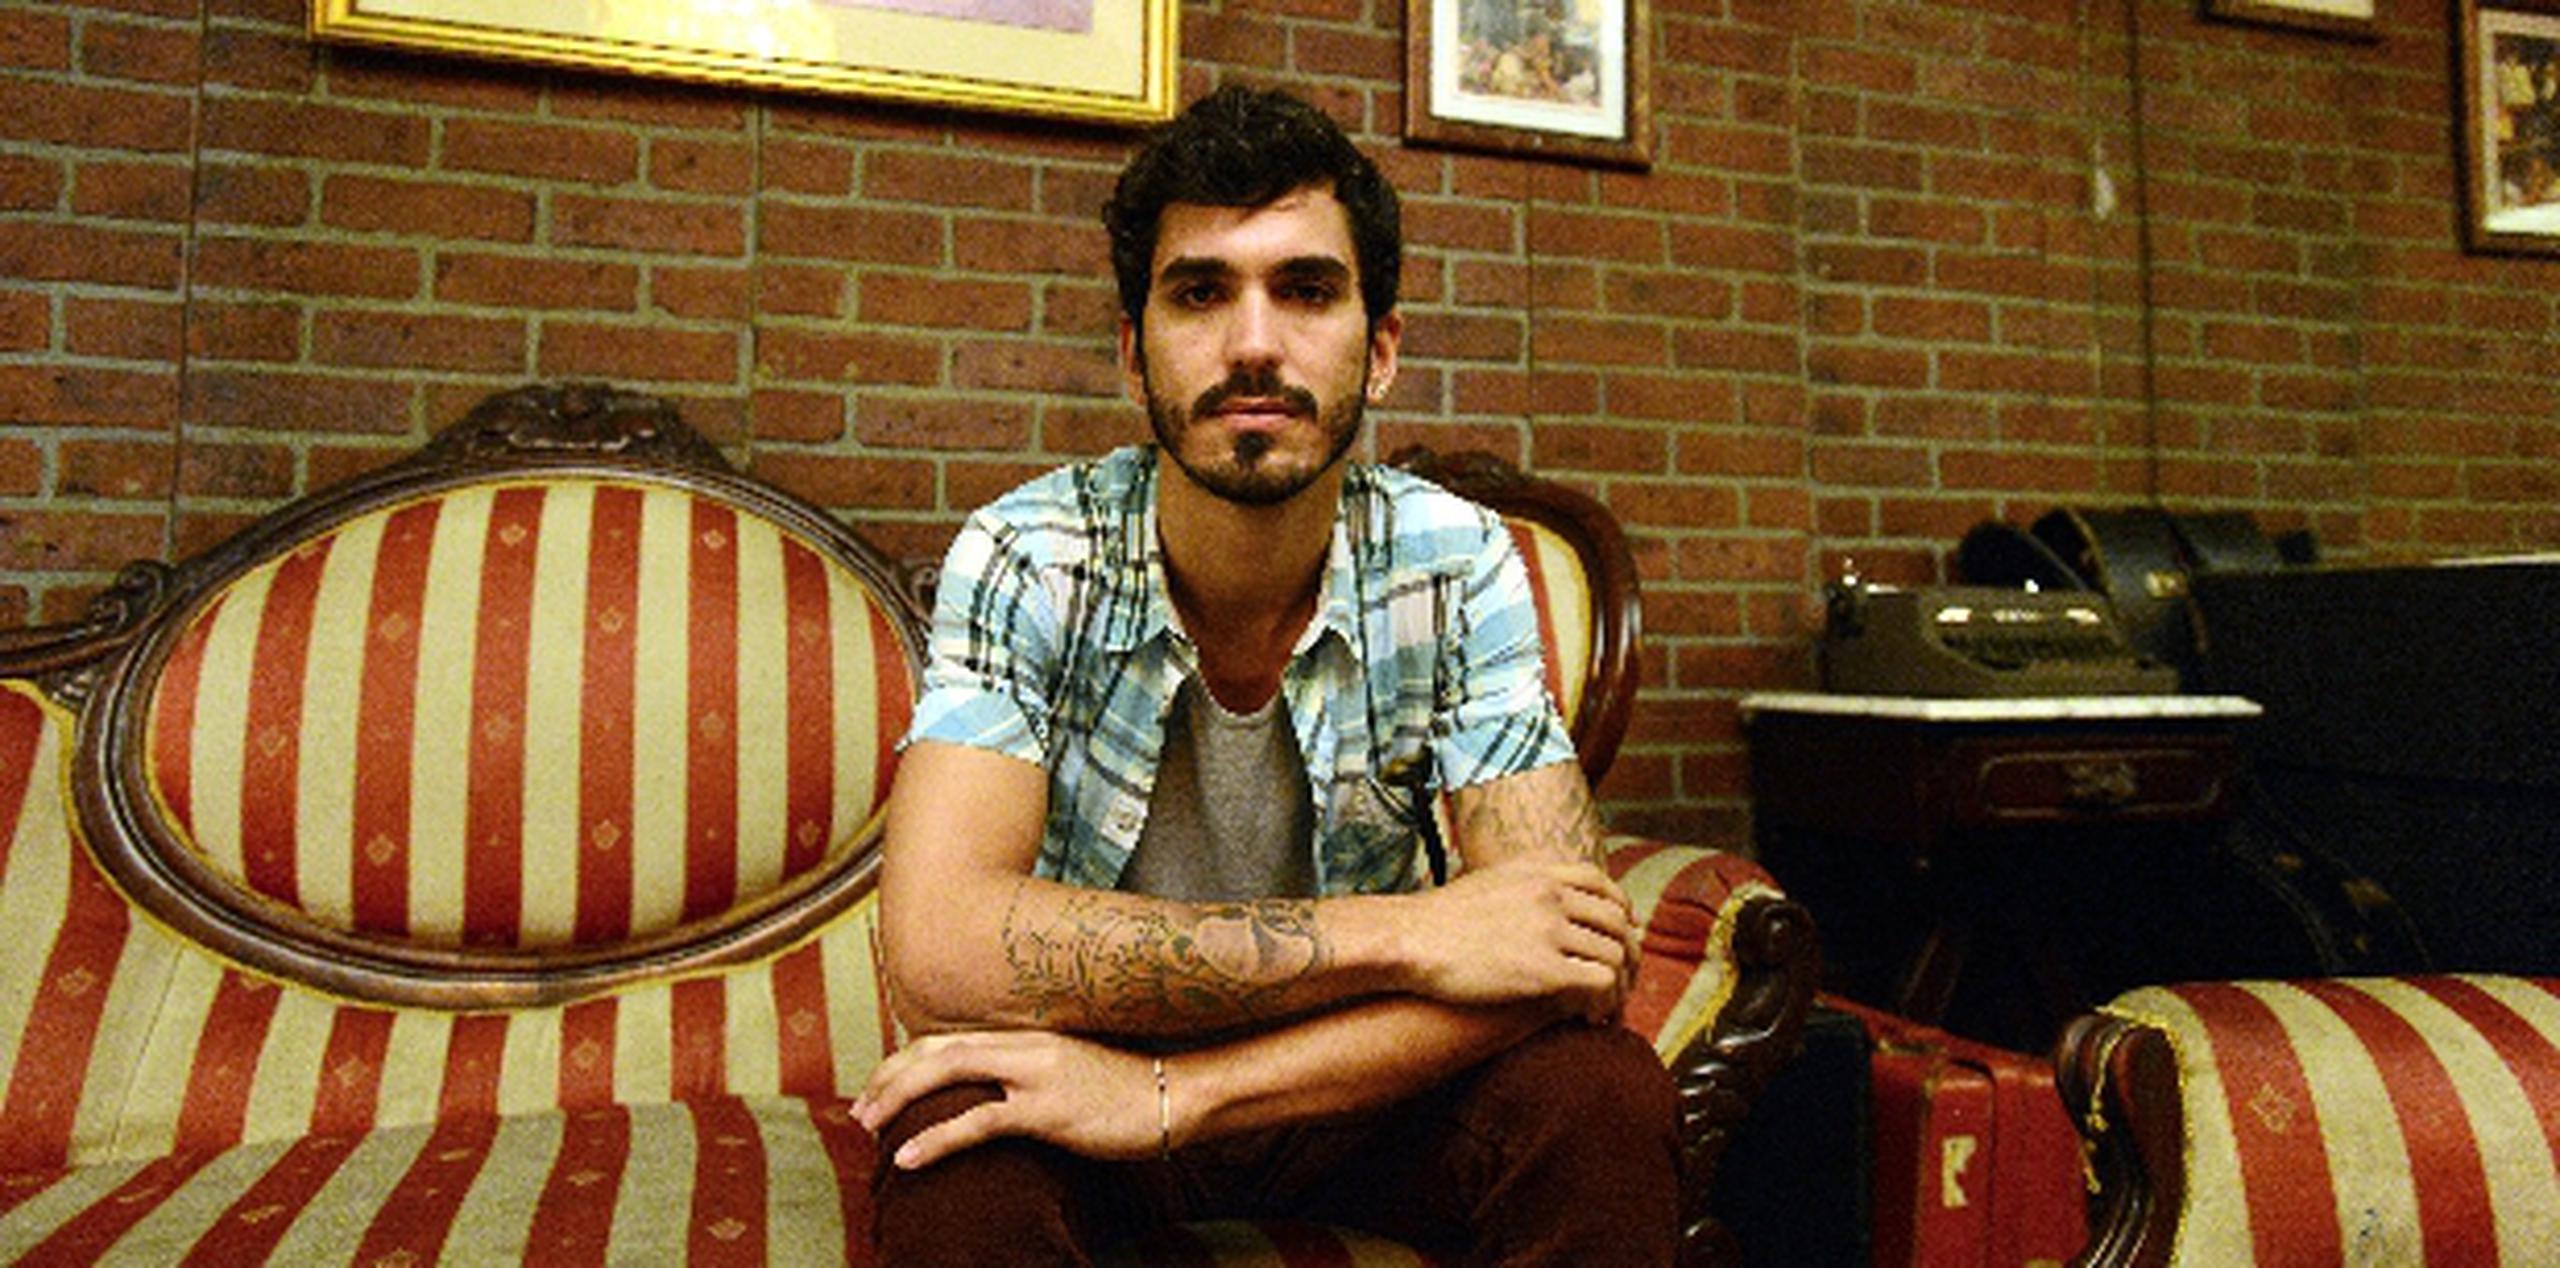 El líder de la agrupación, Carlos Rodríguez, formó parte del especial del Banco Popular con el tema Música ligera. (ana.abruna@gfrmedia.com)